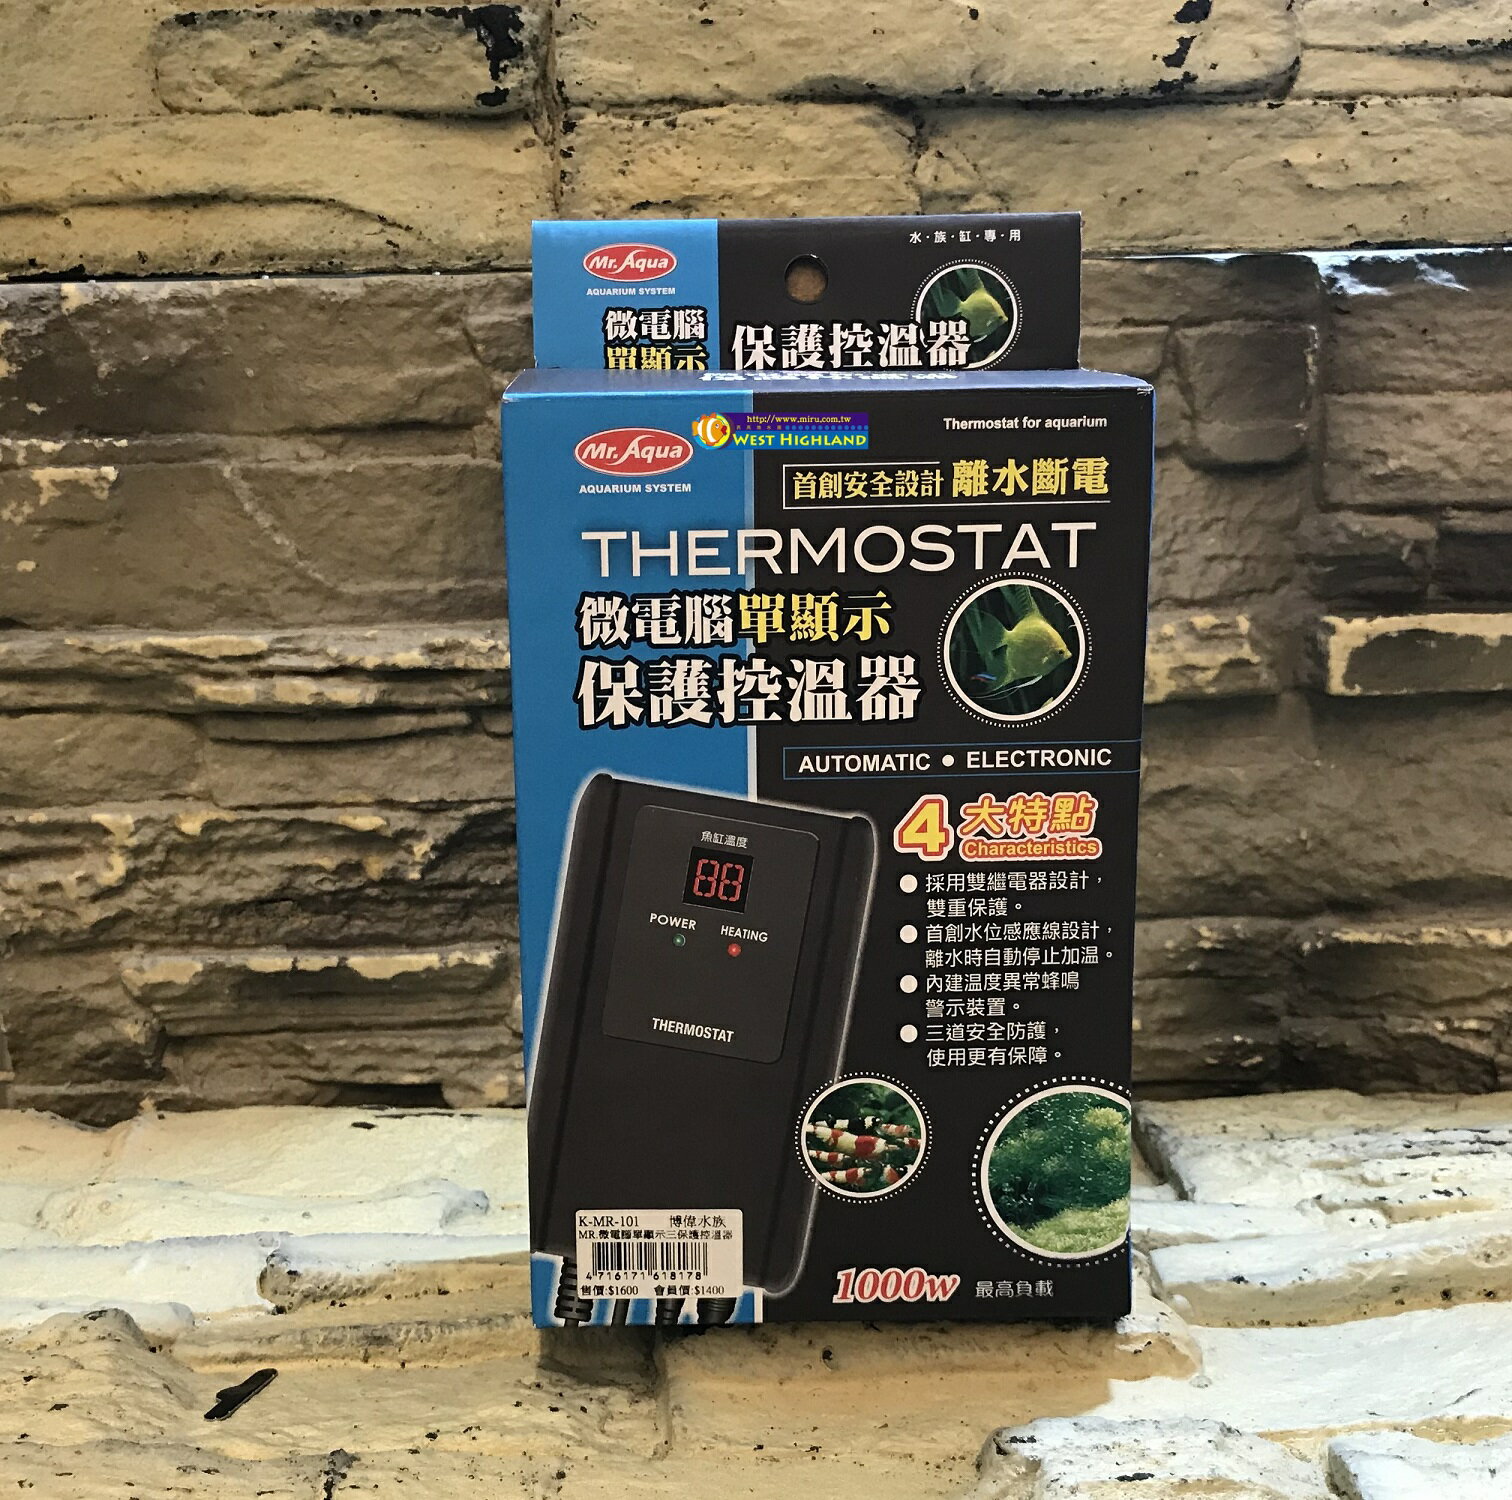 【西高地水族坊】台灣水族先生Mr.Aqua THERMOSTAT微電腦單顯示保護控溫器 三段安全防護